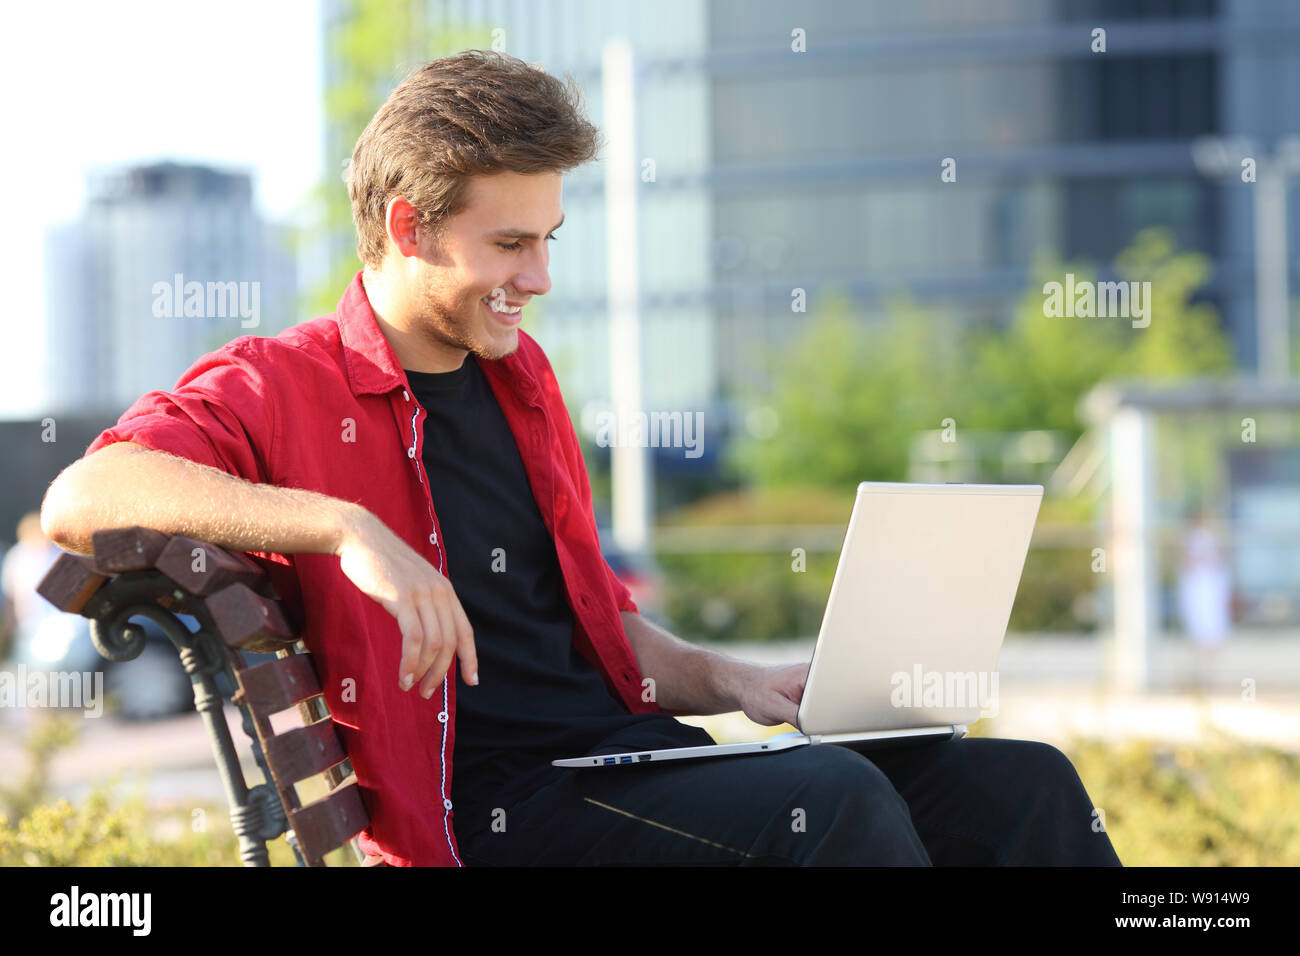 Glückliche Menschen sitzen auf einer Bank mit einem Laptop online Videos in einem Park zu beobachten Stockfoto